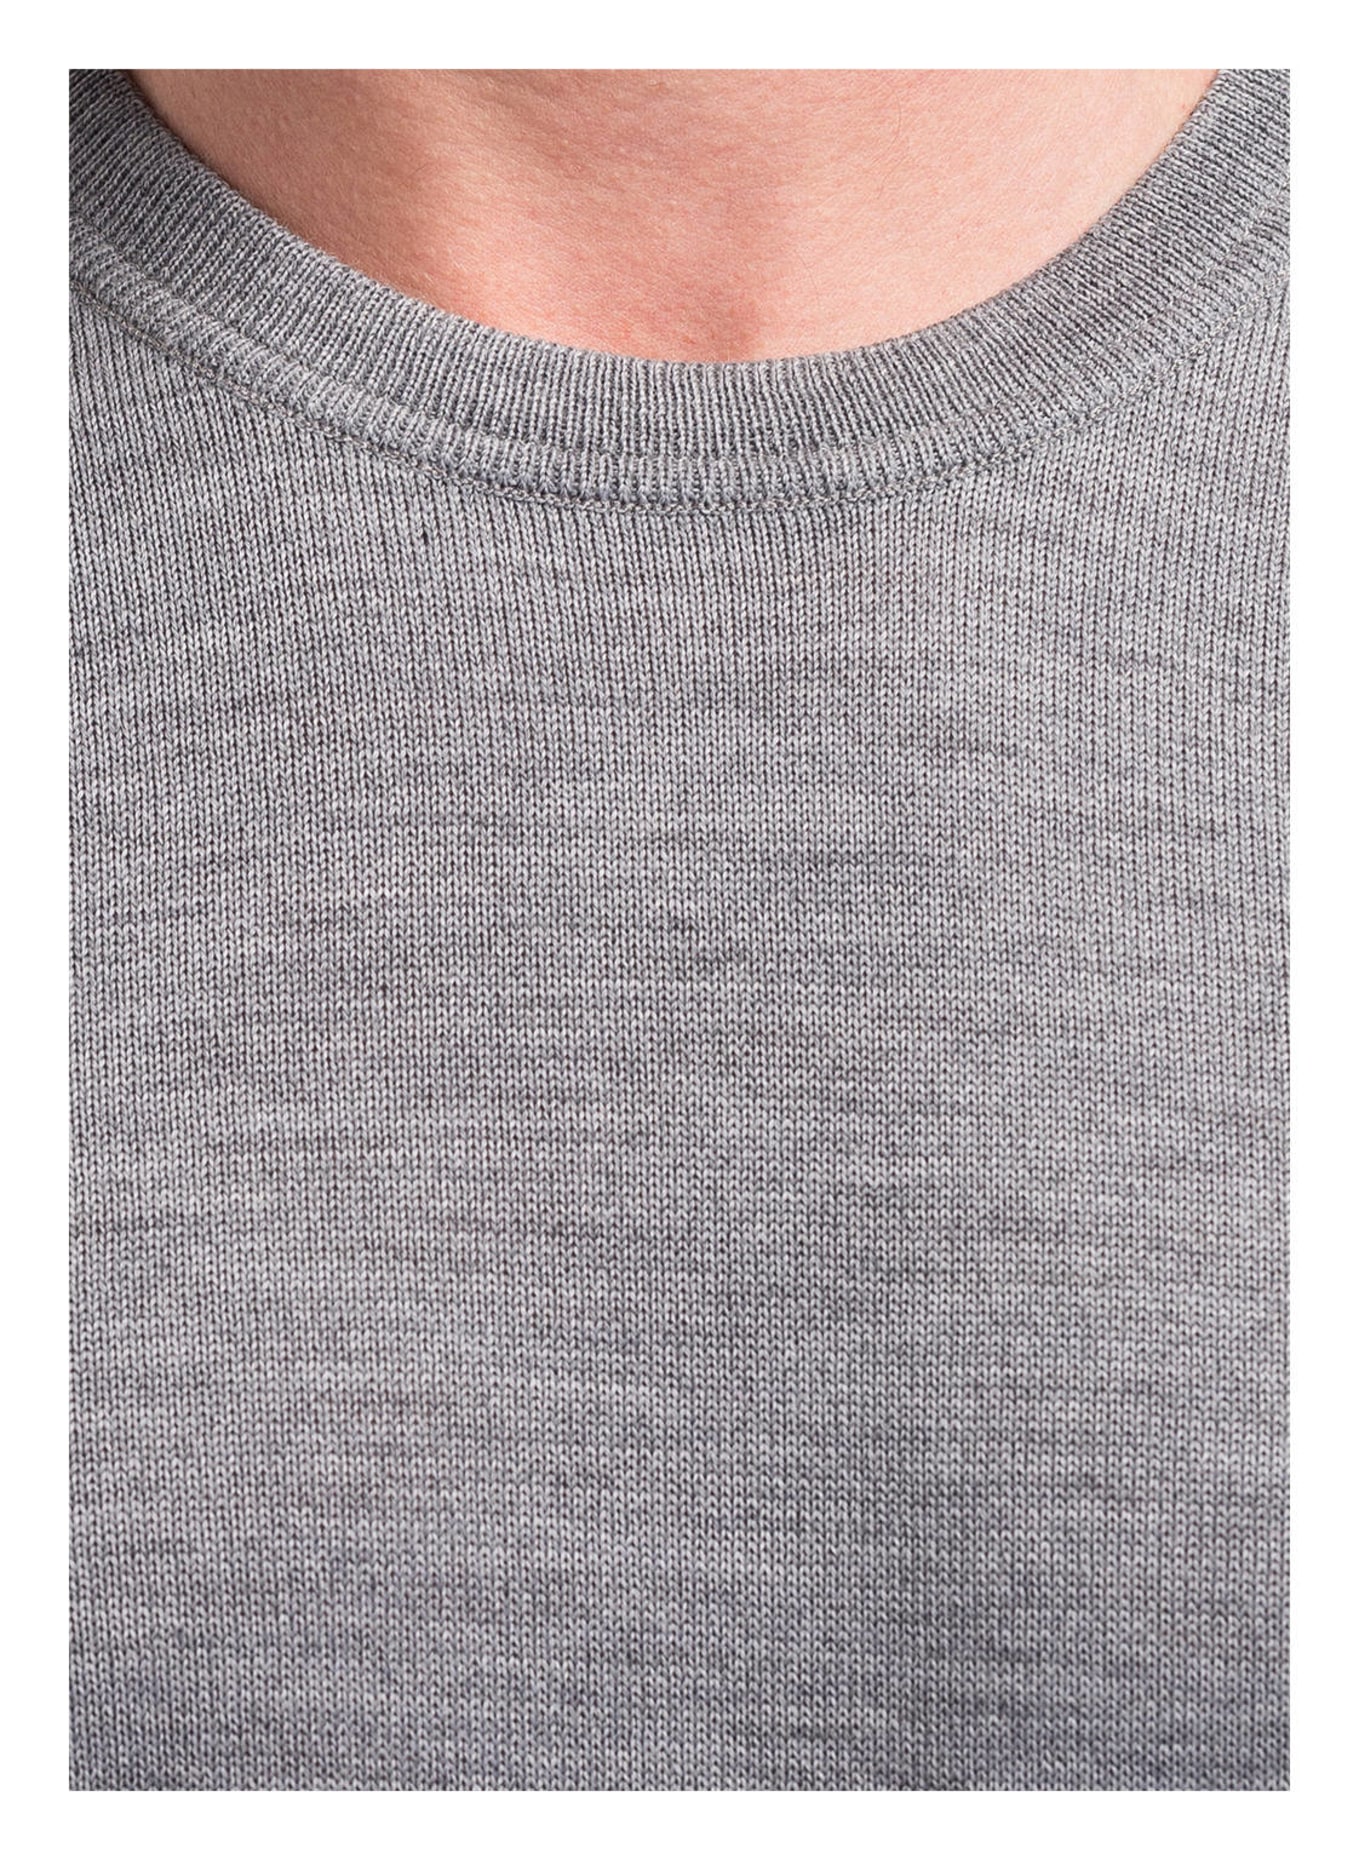 MAERZ MUENCHEN Pullover , Farbe: GRAU MELIERT (Bild 4)